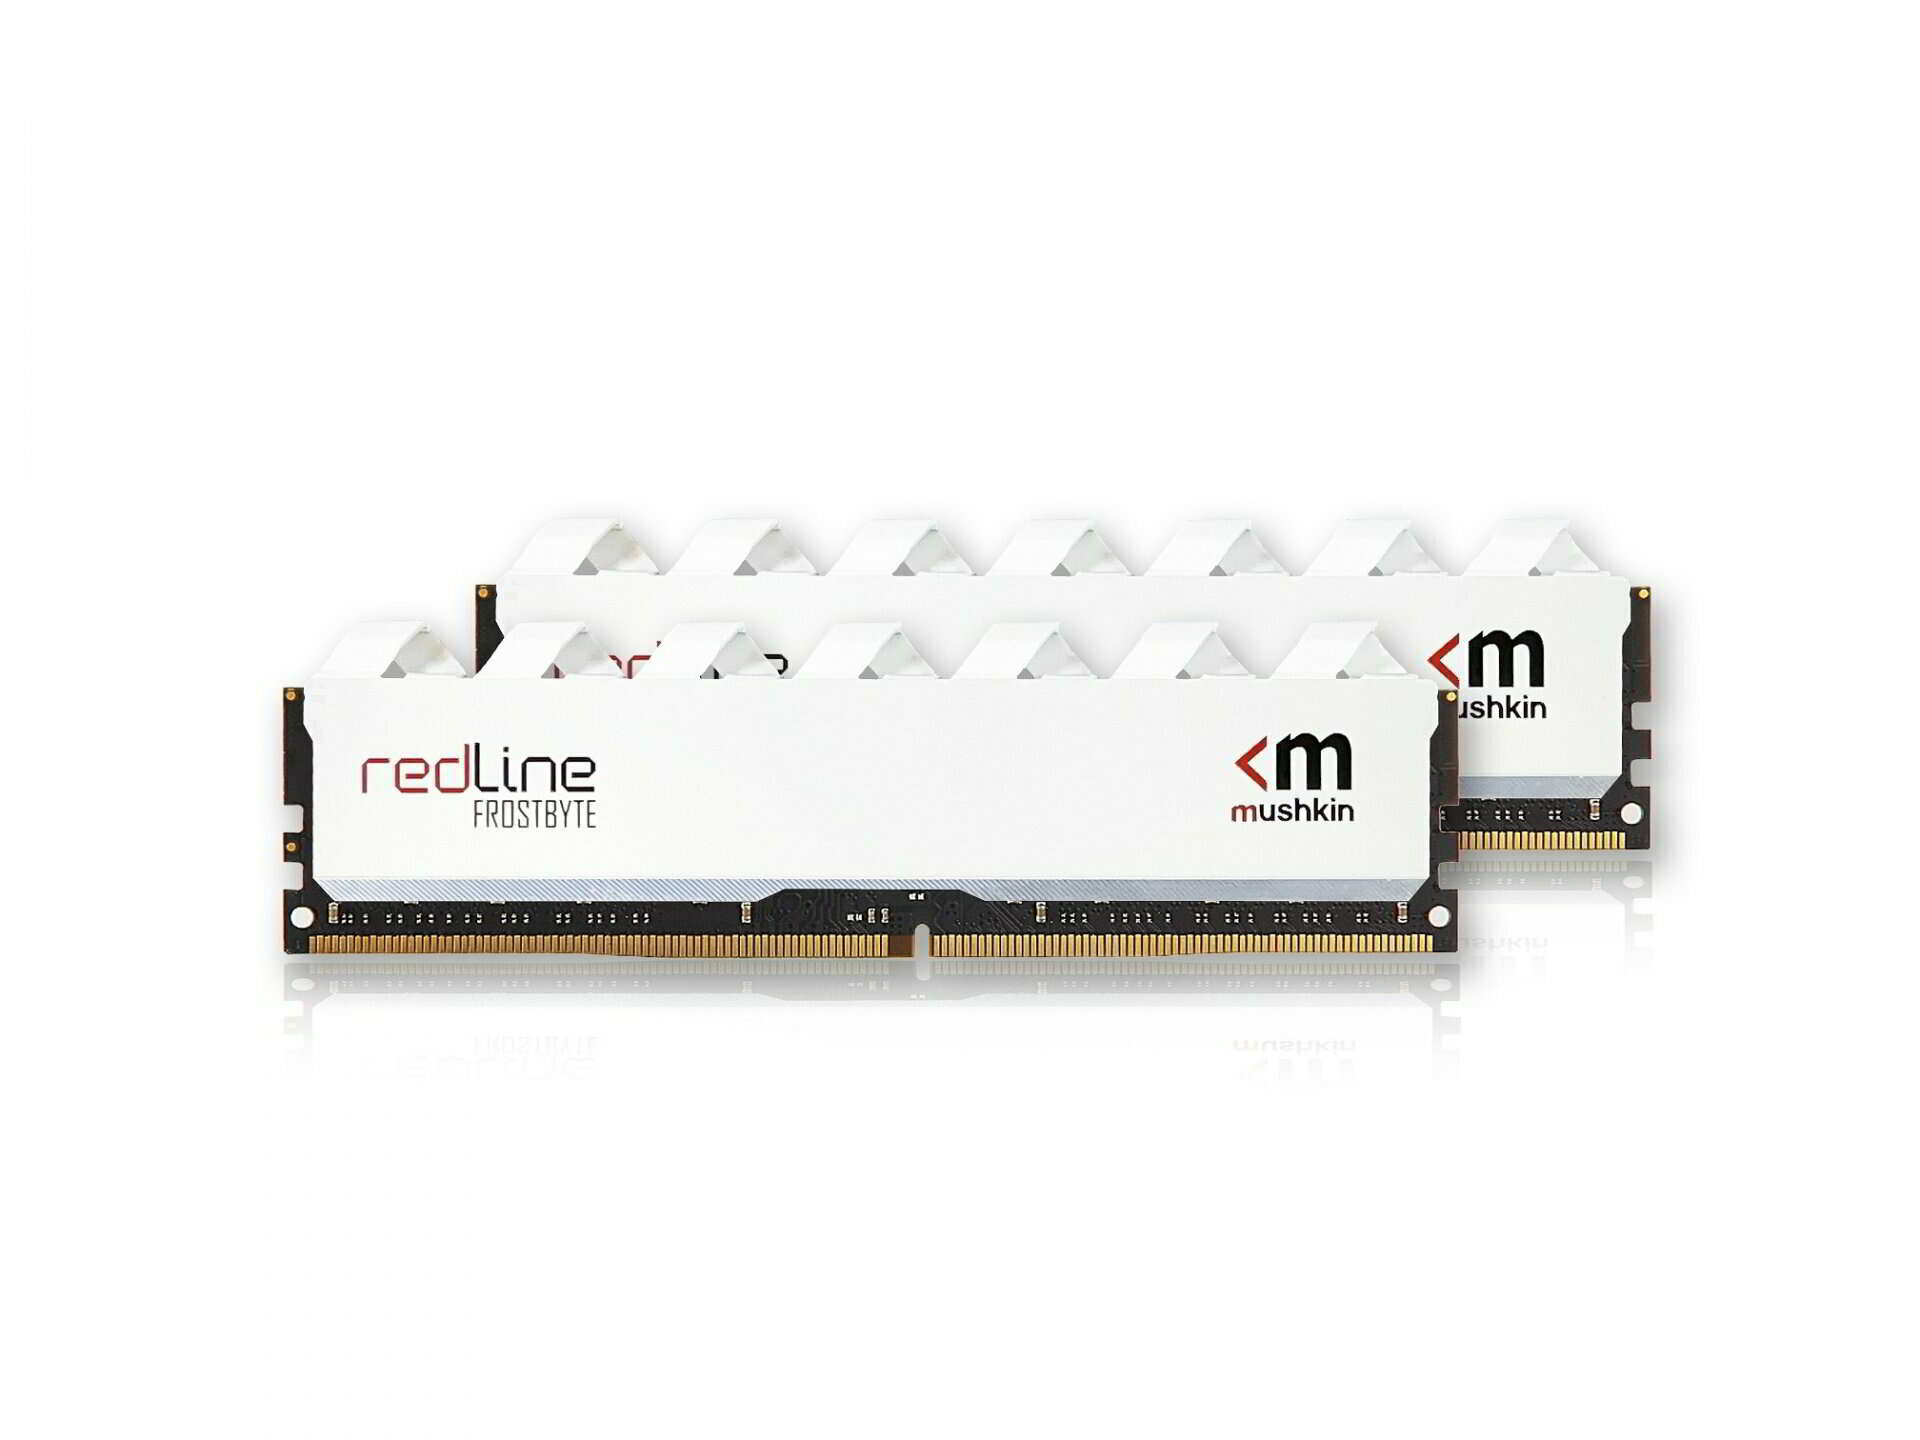 Mushkin 64gb / 3200 redline frostbyte white ddr4 ram kit (2x32gb)